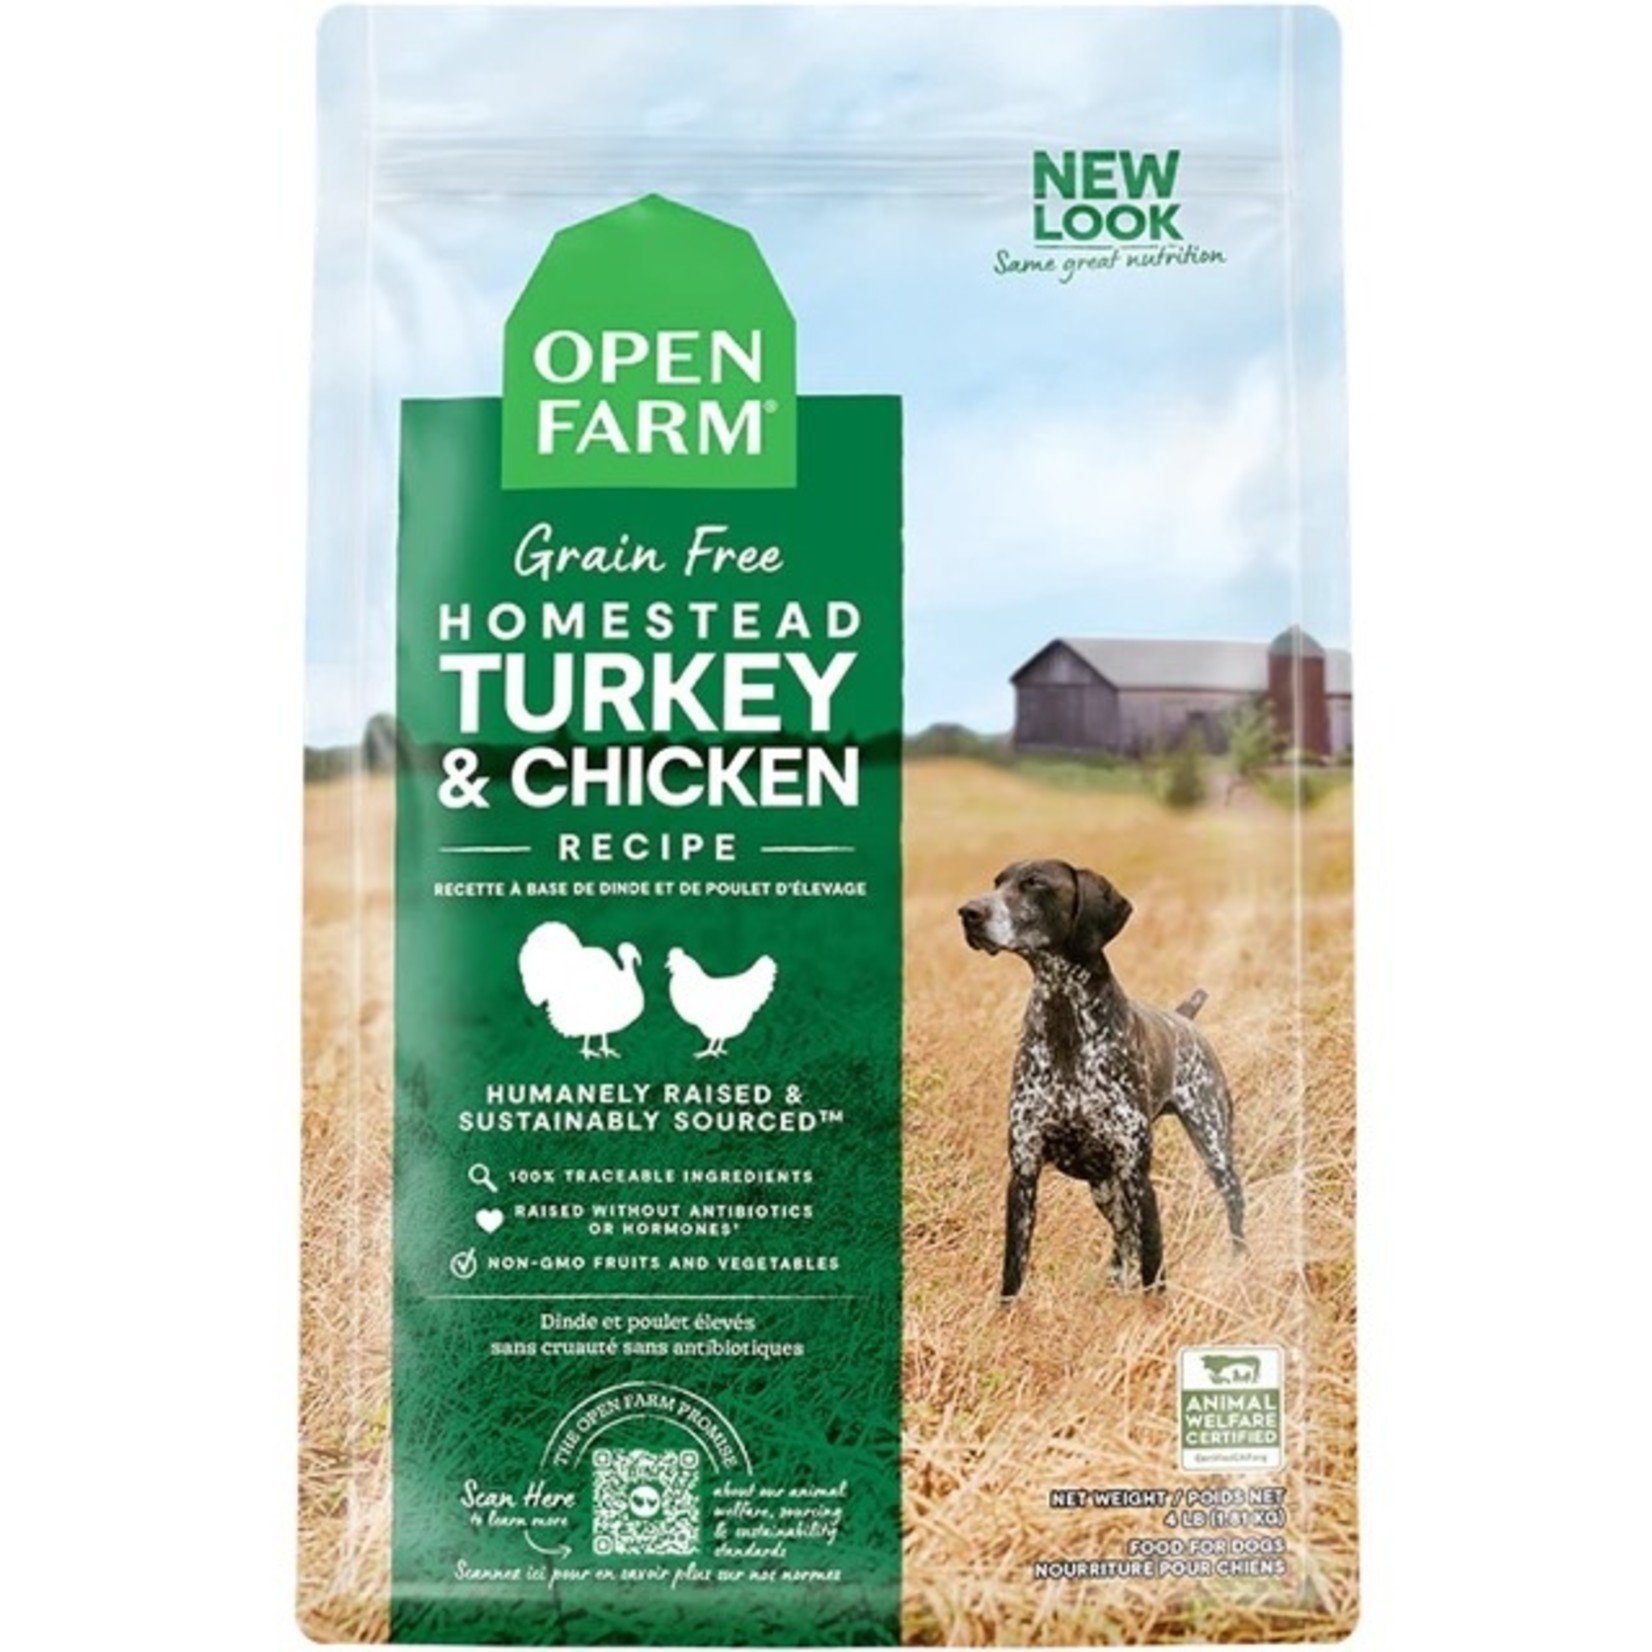 https://cdn.shoplightspeed.com/shops/653692/files/52649114/1652x1652x2/open-farm-open-farm-gf-homestead-turkey-chicken-22.jpg